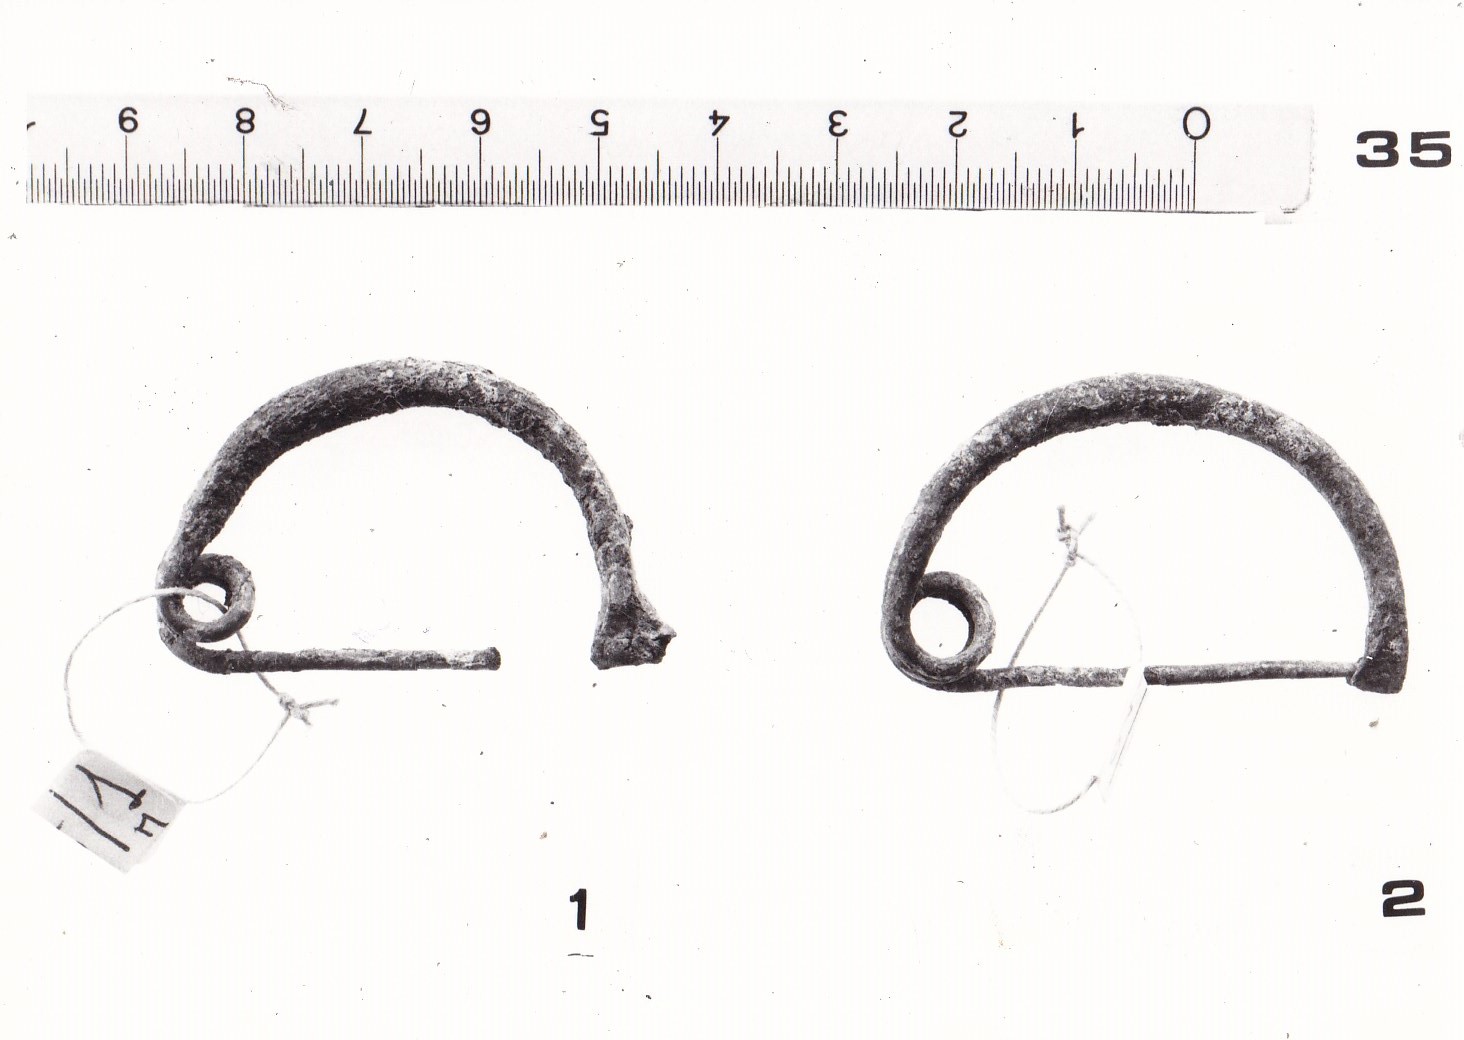 fibula ad arco ingrossato - FASE TERNI II (inizio Età del ferro I)